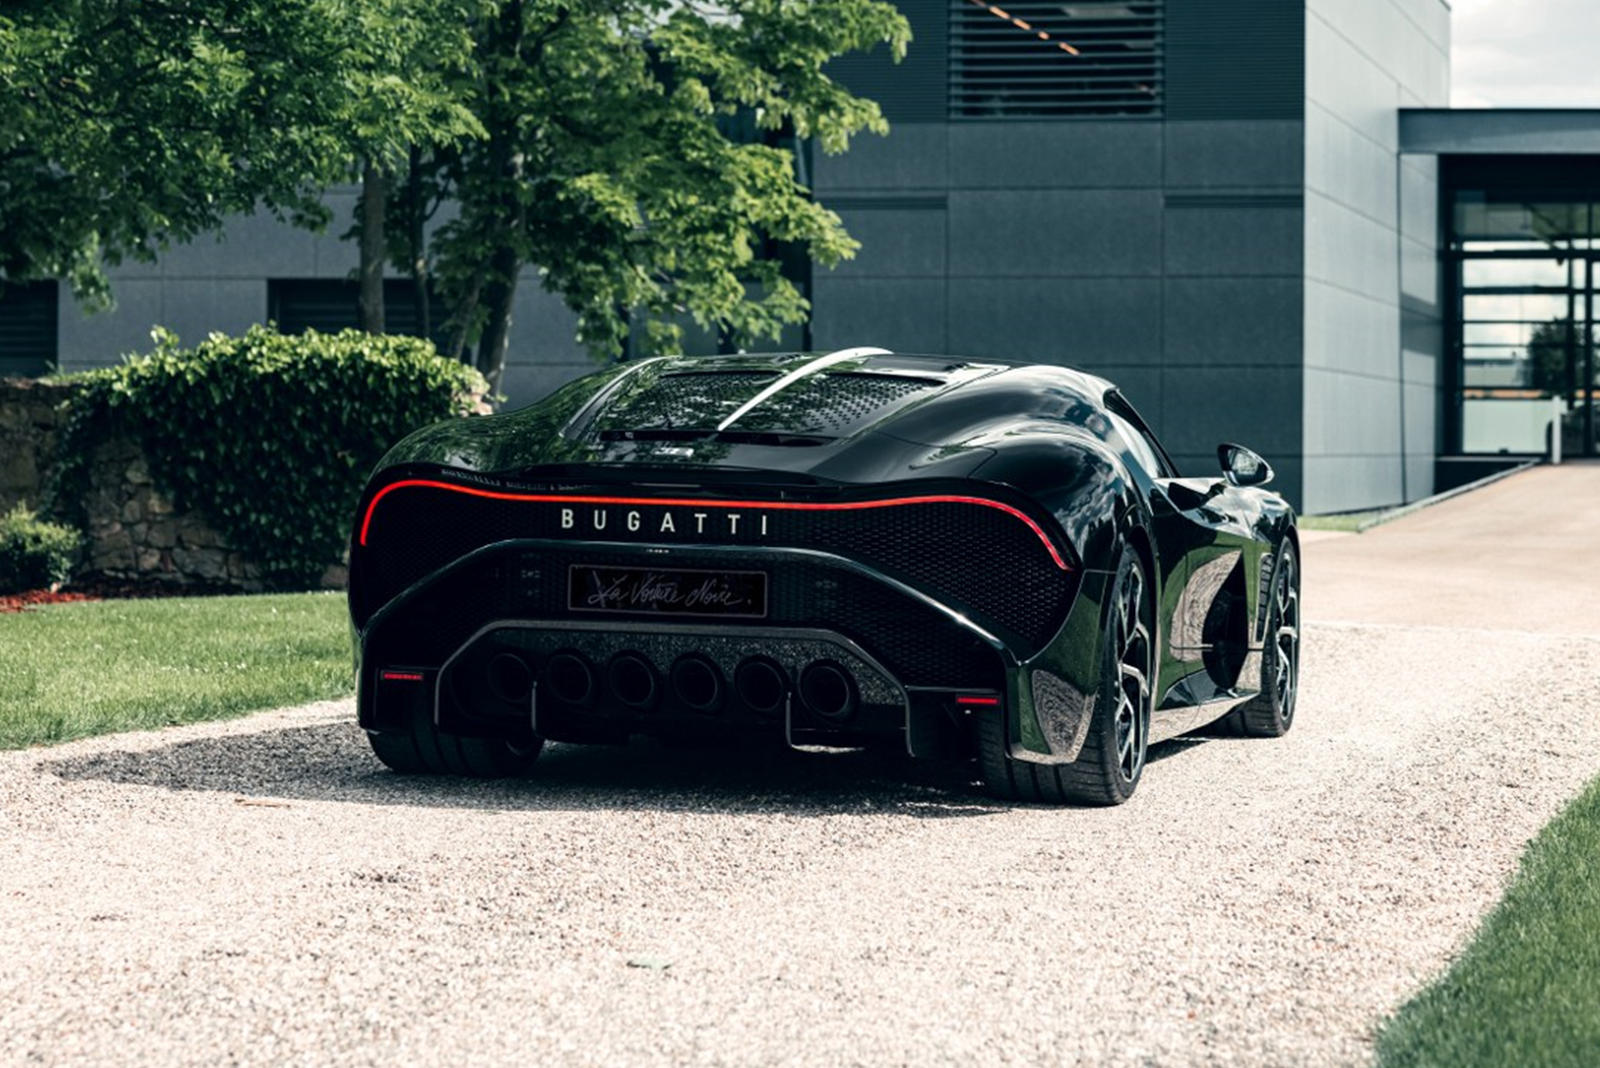 К счастью для тех, кто купил машину, она наконец-то готова. Президент Bugatti Стефан Винкельманн, очевидно, очень гордится своим творением: «Завершенной La Voiture Noire мы еще раз демонстрируем, что мы разрабатываем самые сложные в мире гиперспортив